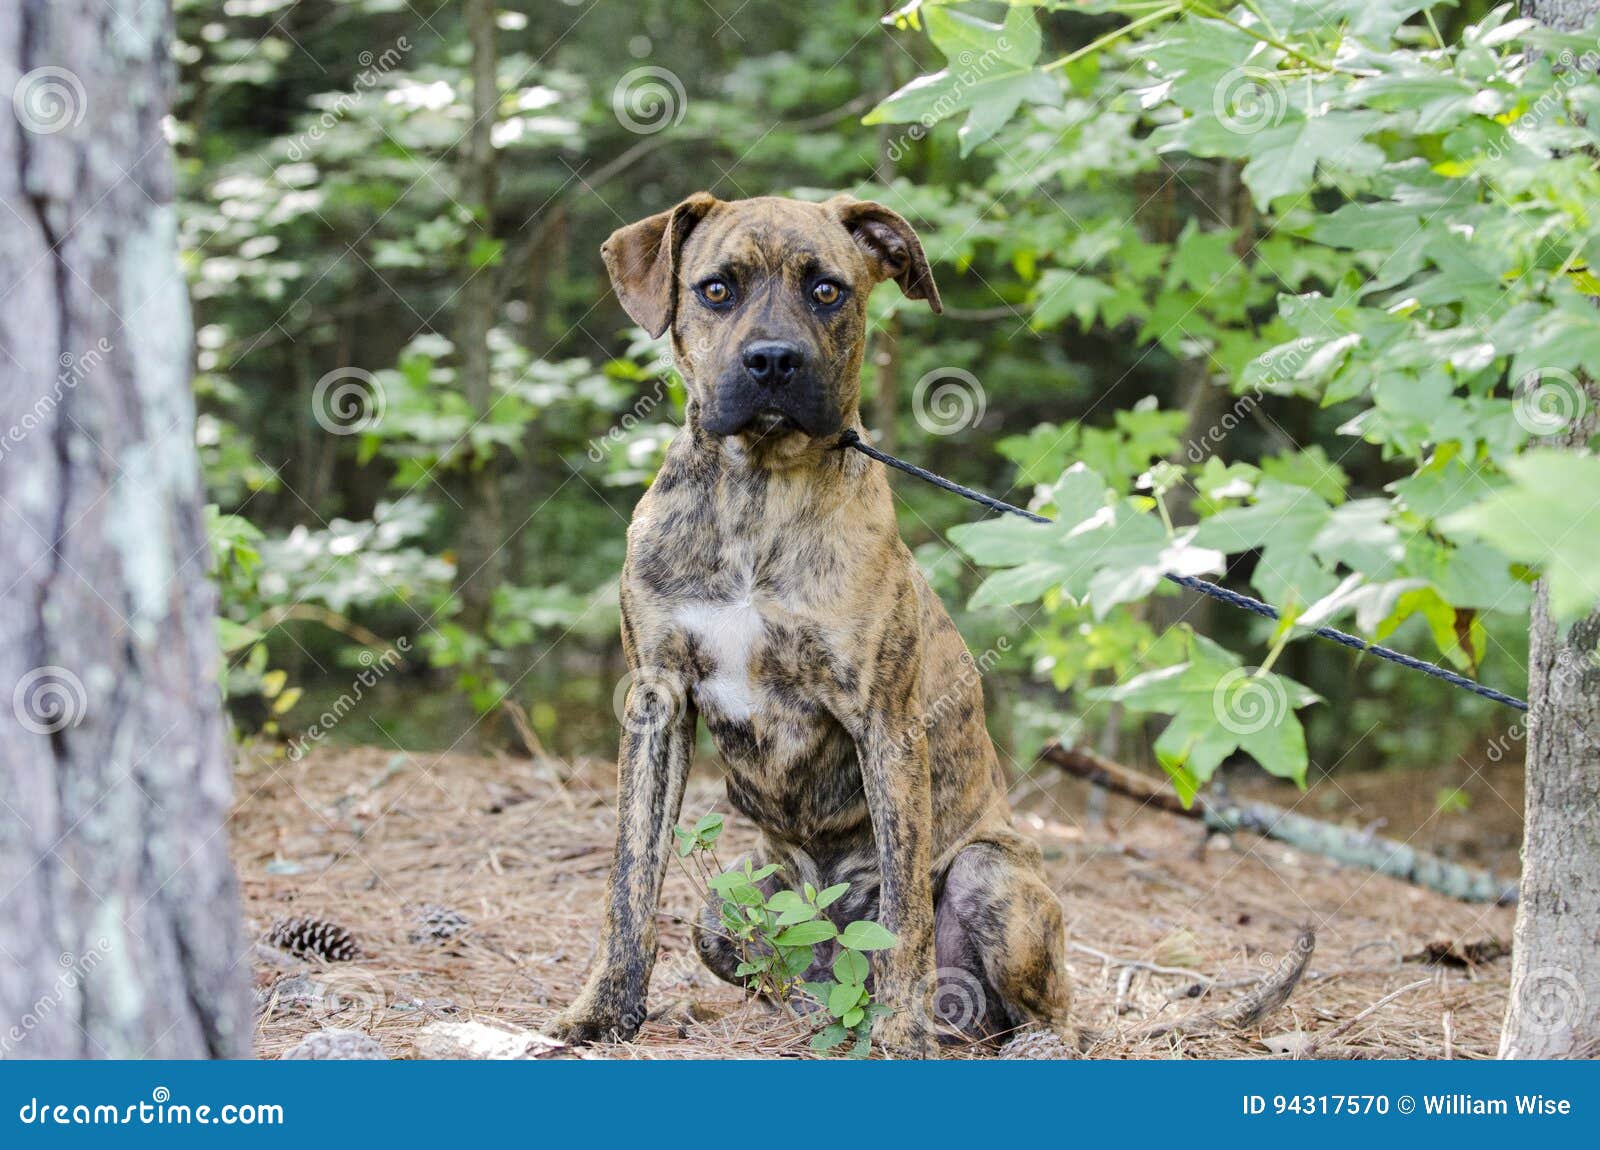 Boxer Plott Hound Pitbull Mixed Breed Dog Stock Photo Image Of Mixed Field 94317570